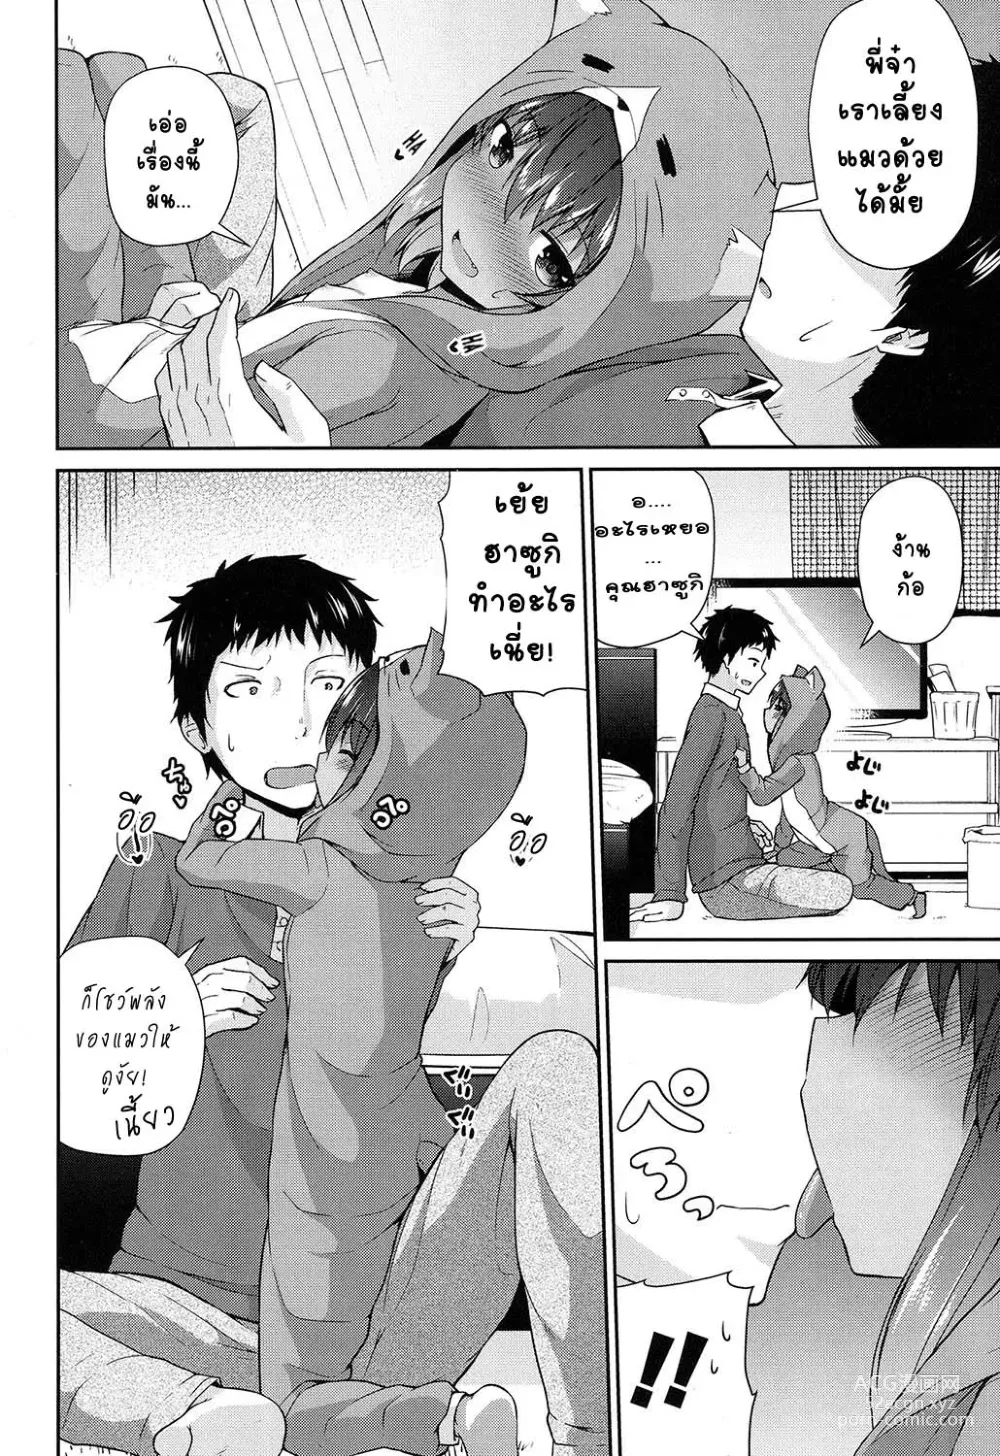 Page 6 of manga Waga Uchi no Neko Jijou